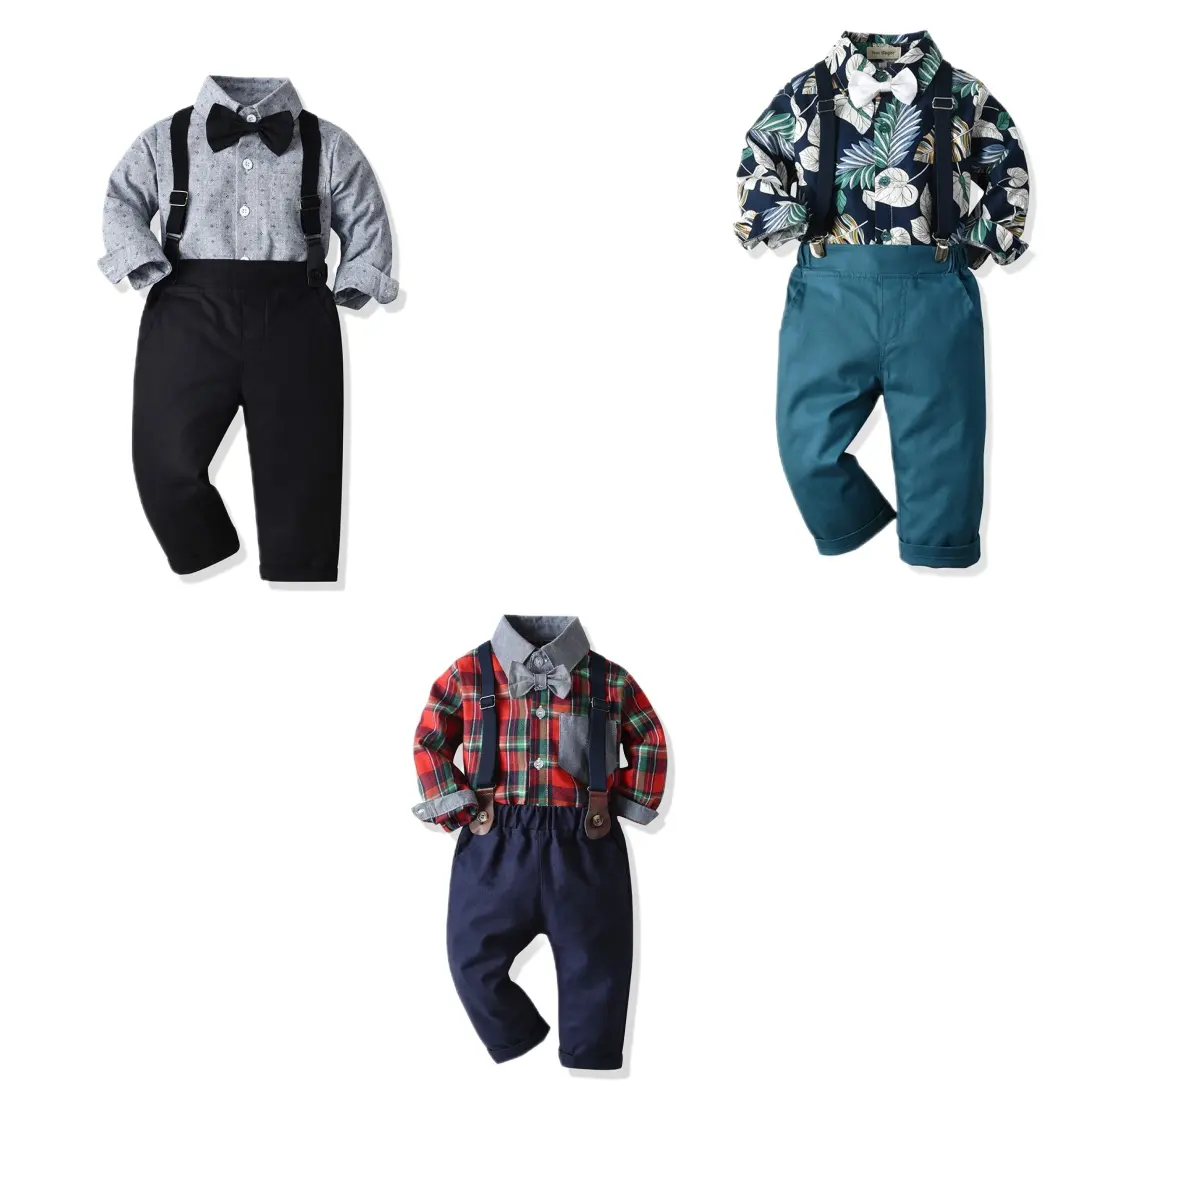 स्टॉक में नवजात शिशु के कपड़े प्लेड काले और सफेद शिशु के कपड़े बच्चे के लड़के के नए कपड़े नए मॉडल